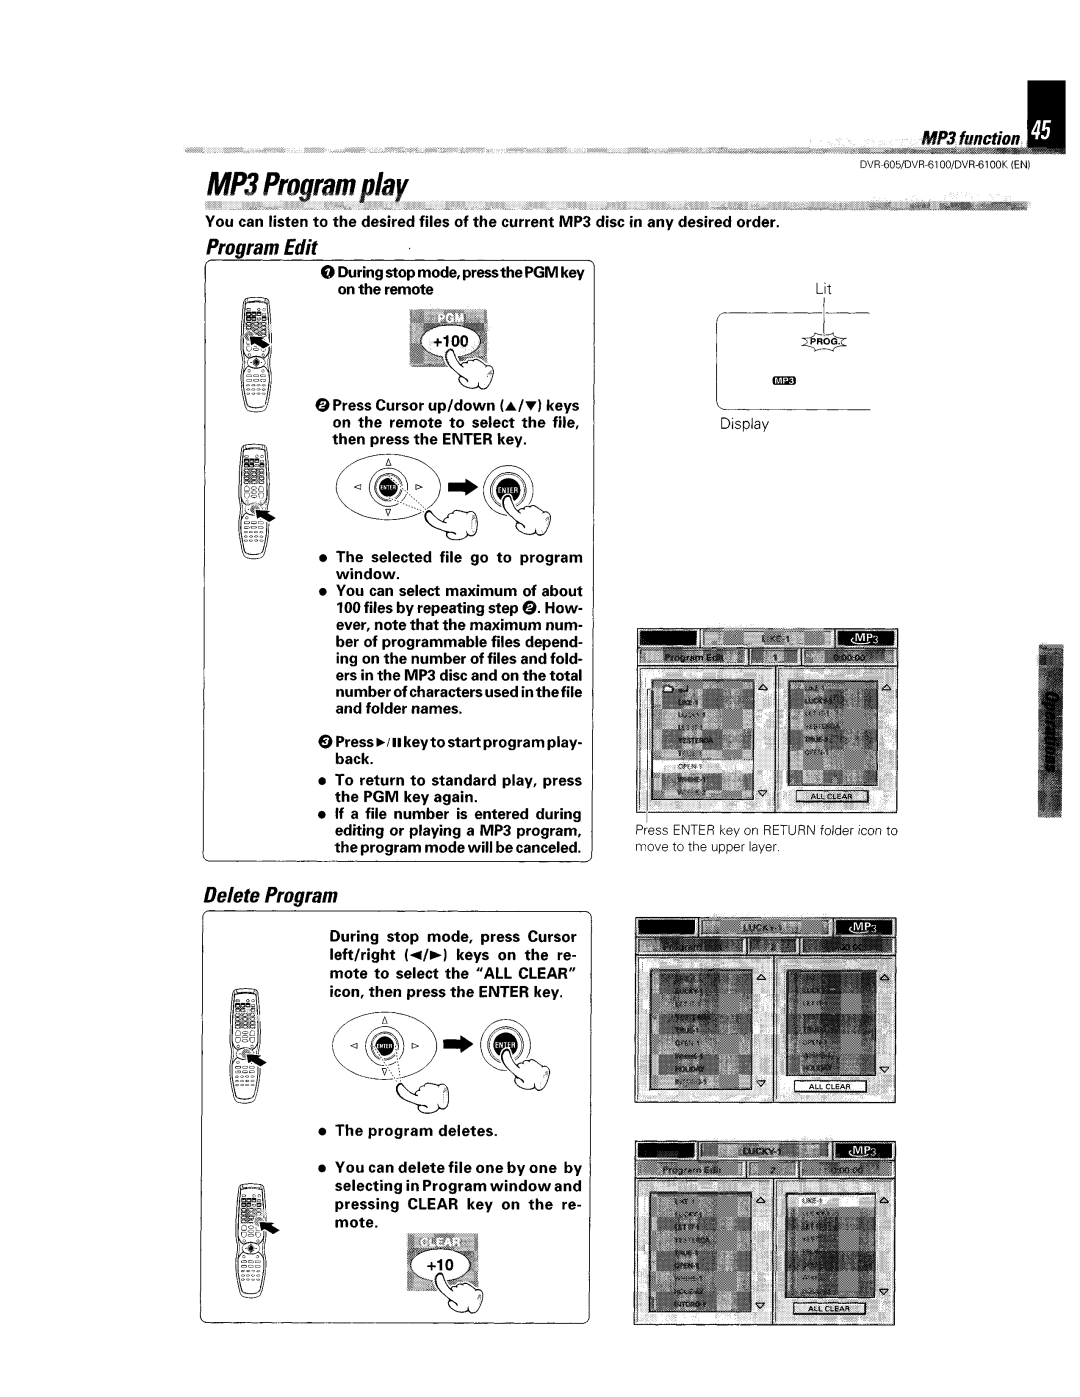 Kenwood DVR-6100K instruction manual 